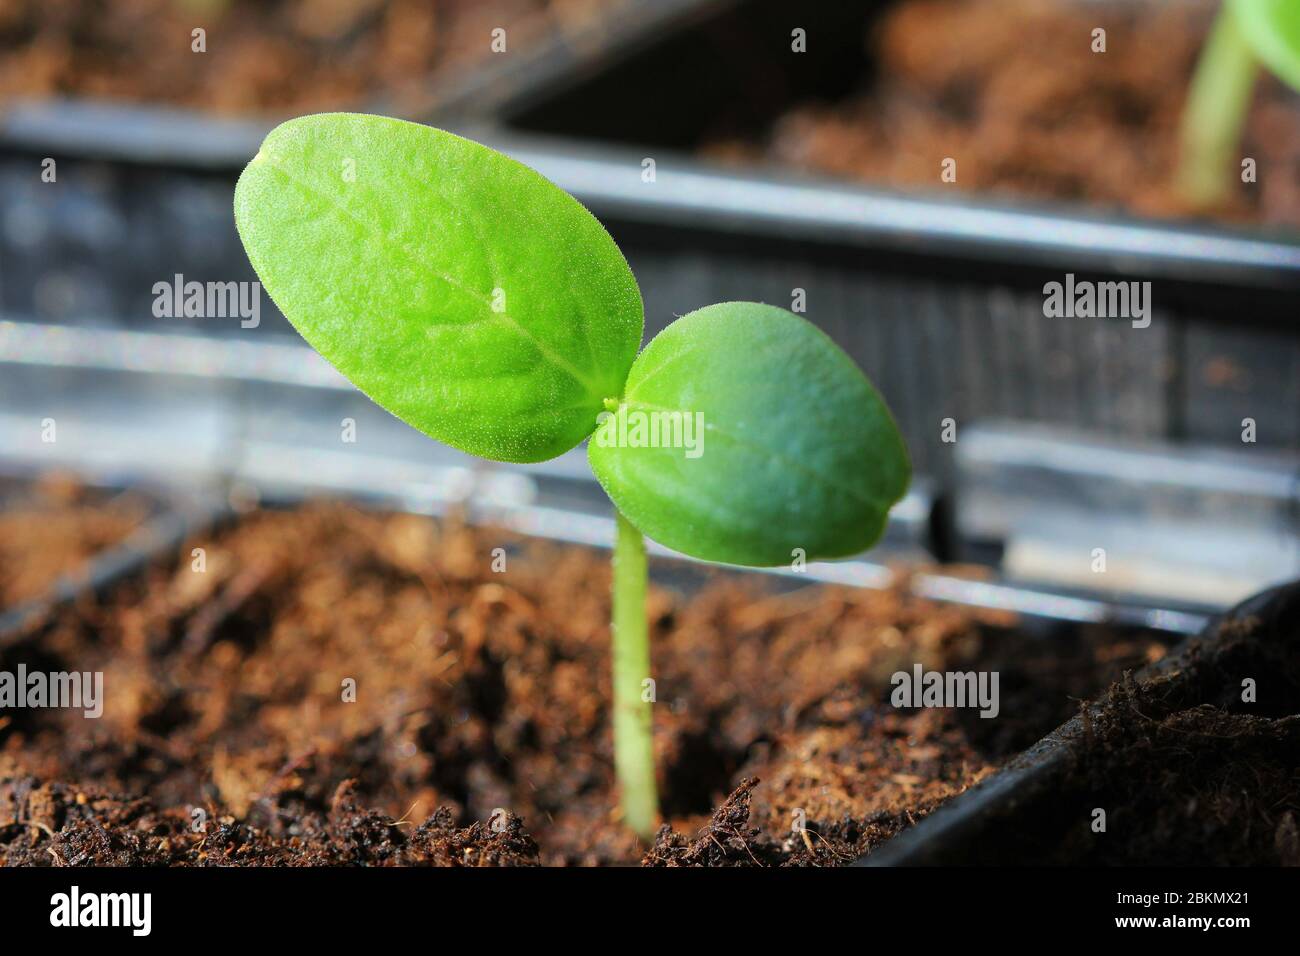 Jeunes semis frais poussant dans des pots en plastique. Culture de concombres en serre. Pousses de semis de concombre Banque D'Images